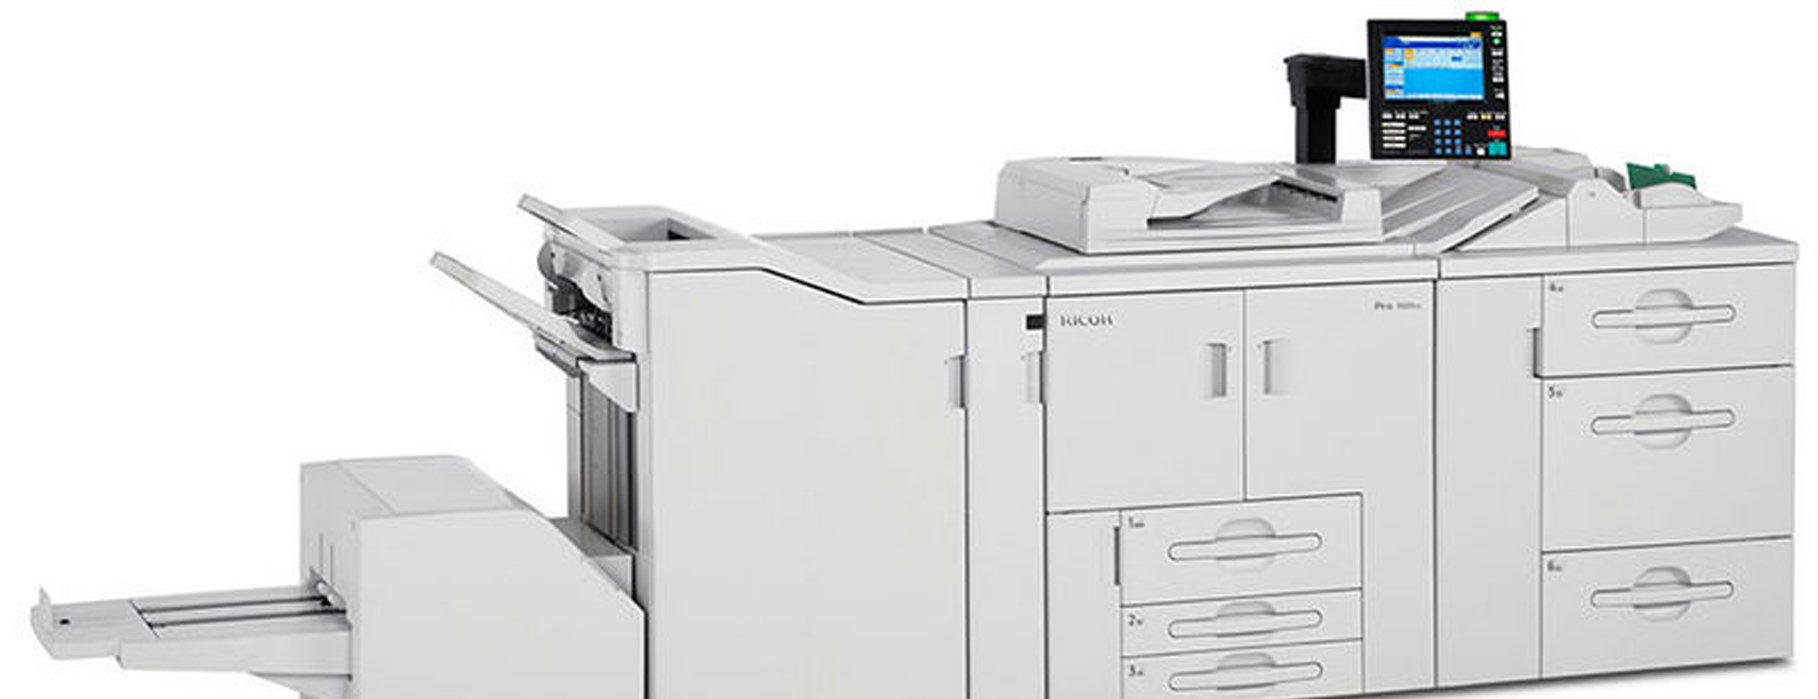 Printer 906EX (1)